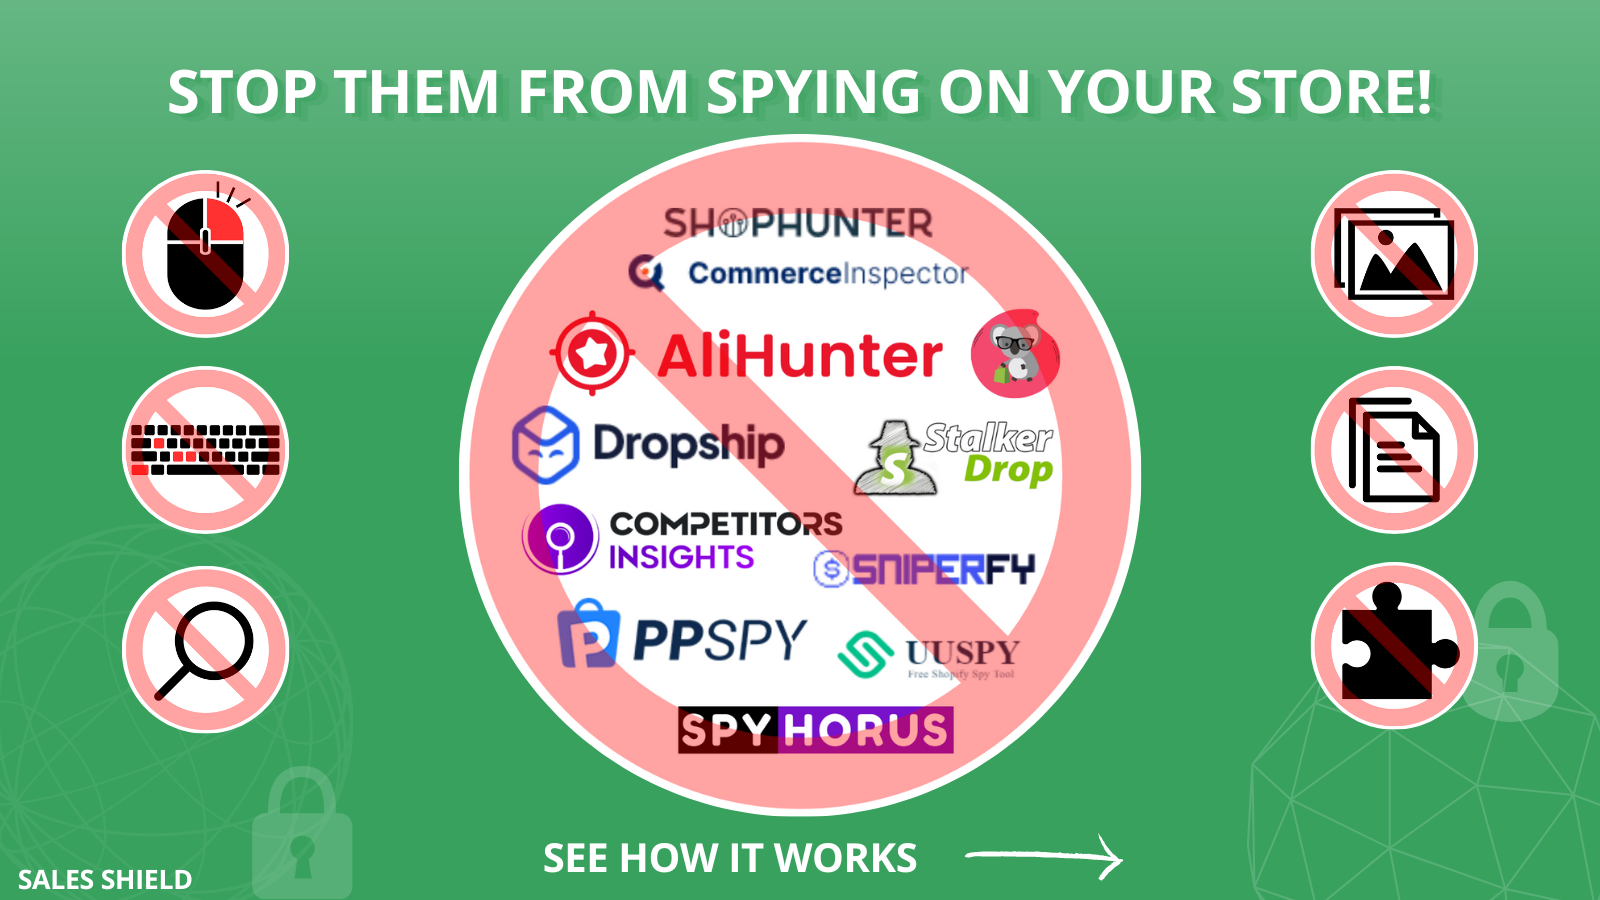 Stop ze van het bespioneren van uw winkel! Shophunter, ppspy, uuspy